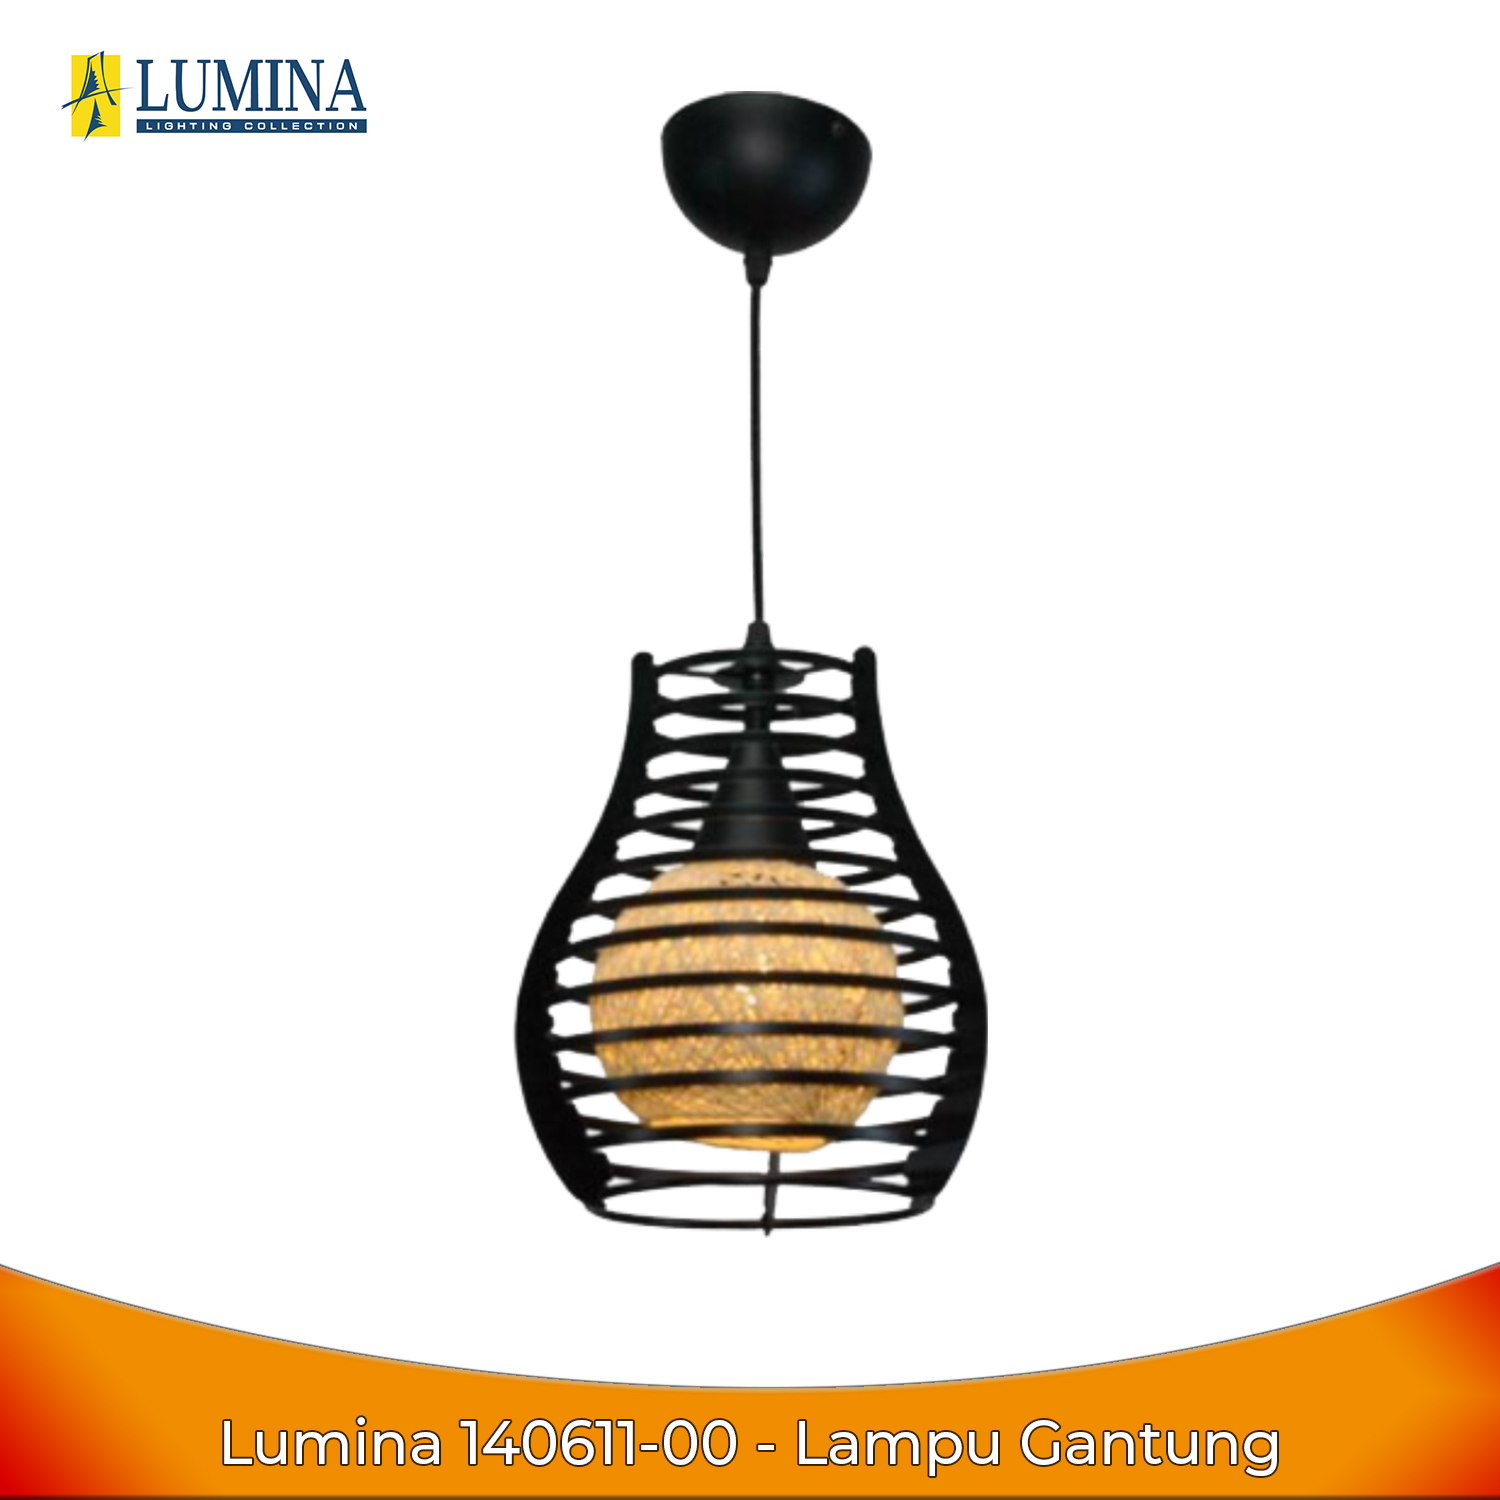 Lumina 7013/1 Lampu Gantung Minimalis